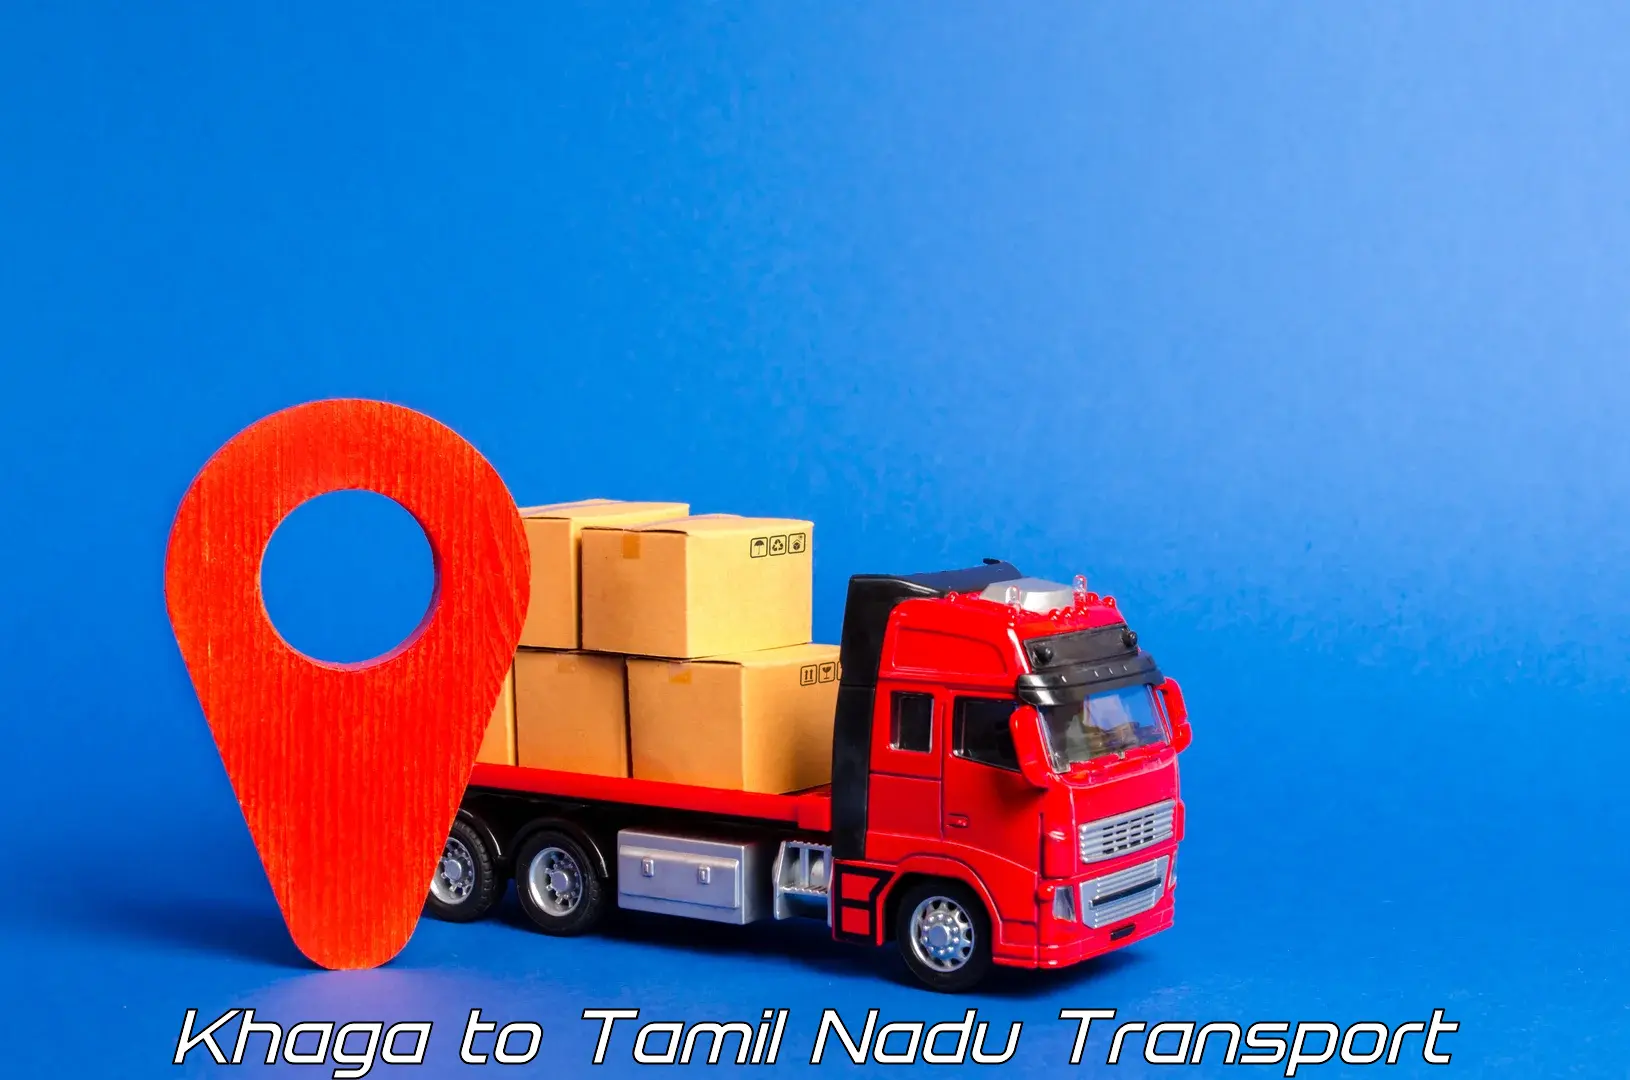 India truck logistics services Khaga to Chetpet